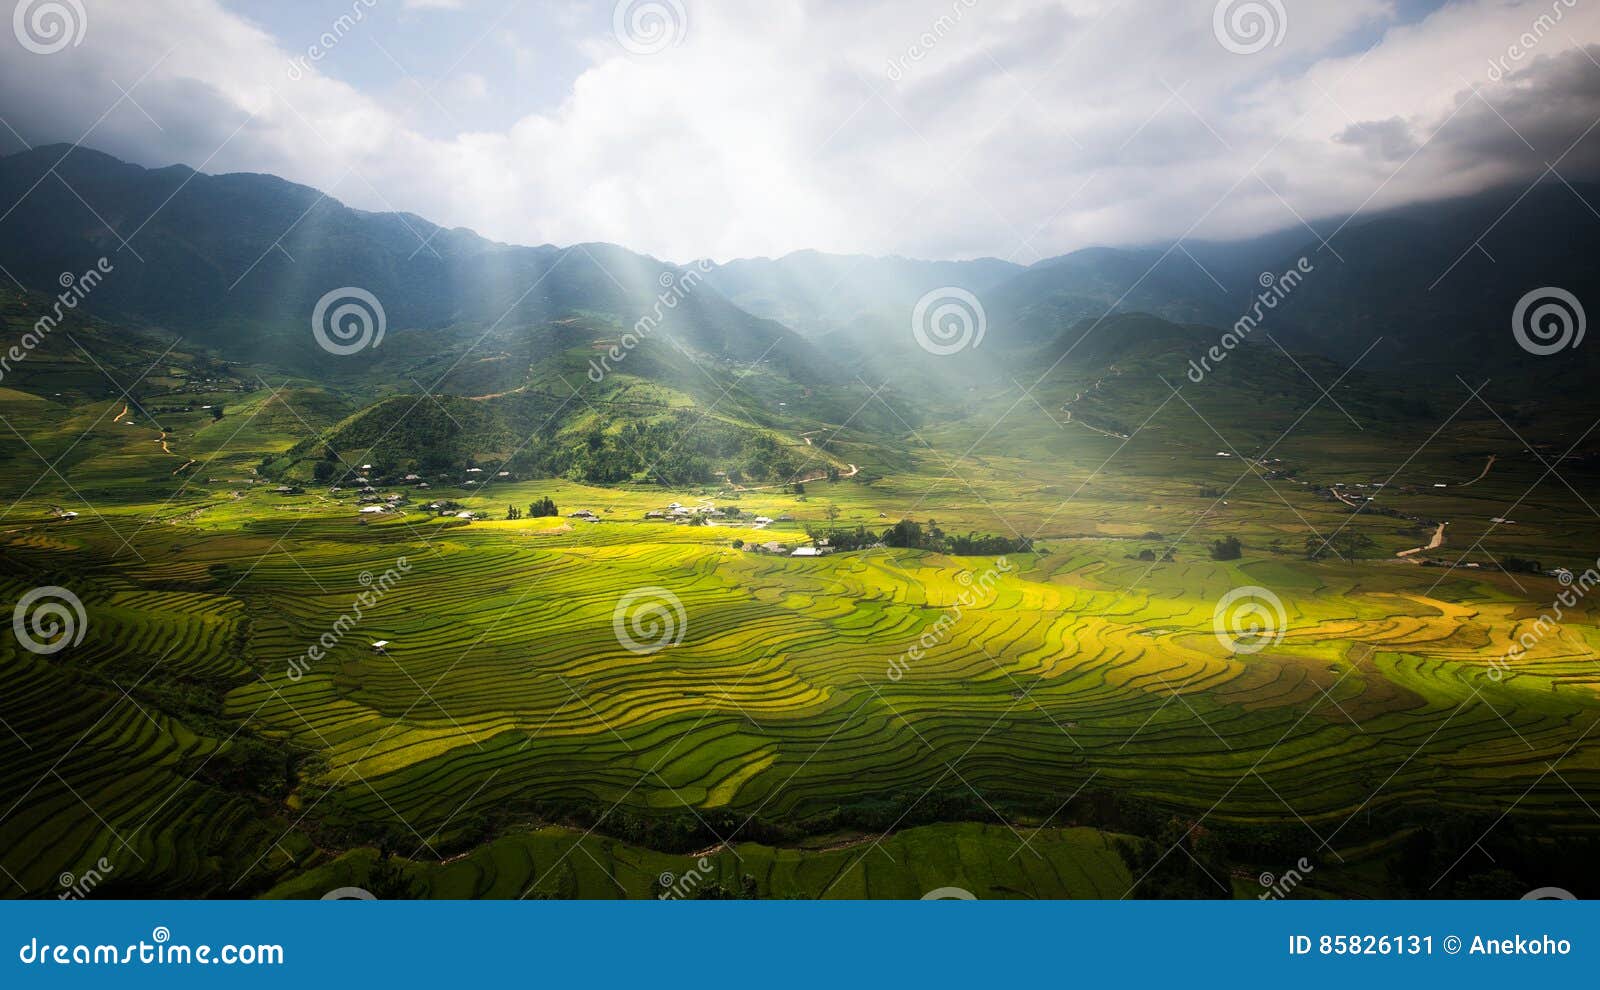 landscape of rice field in tule